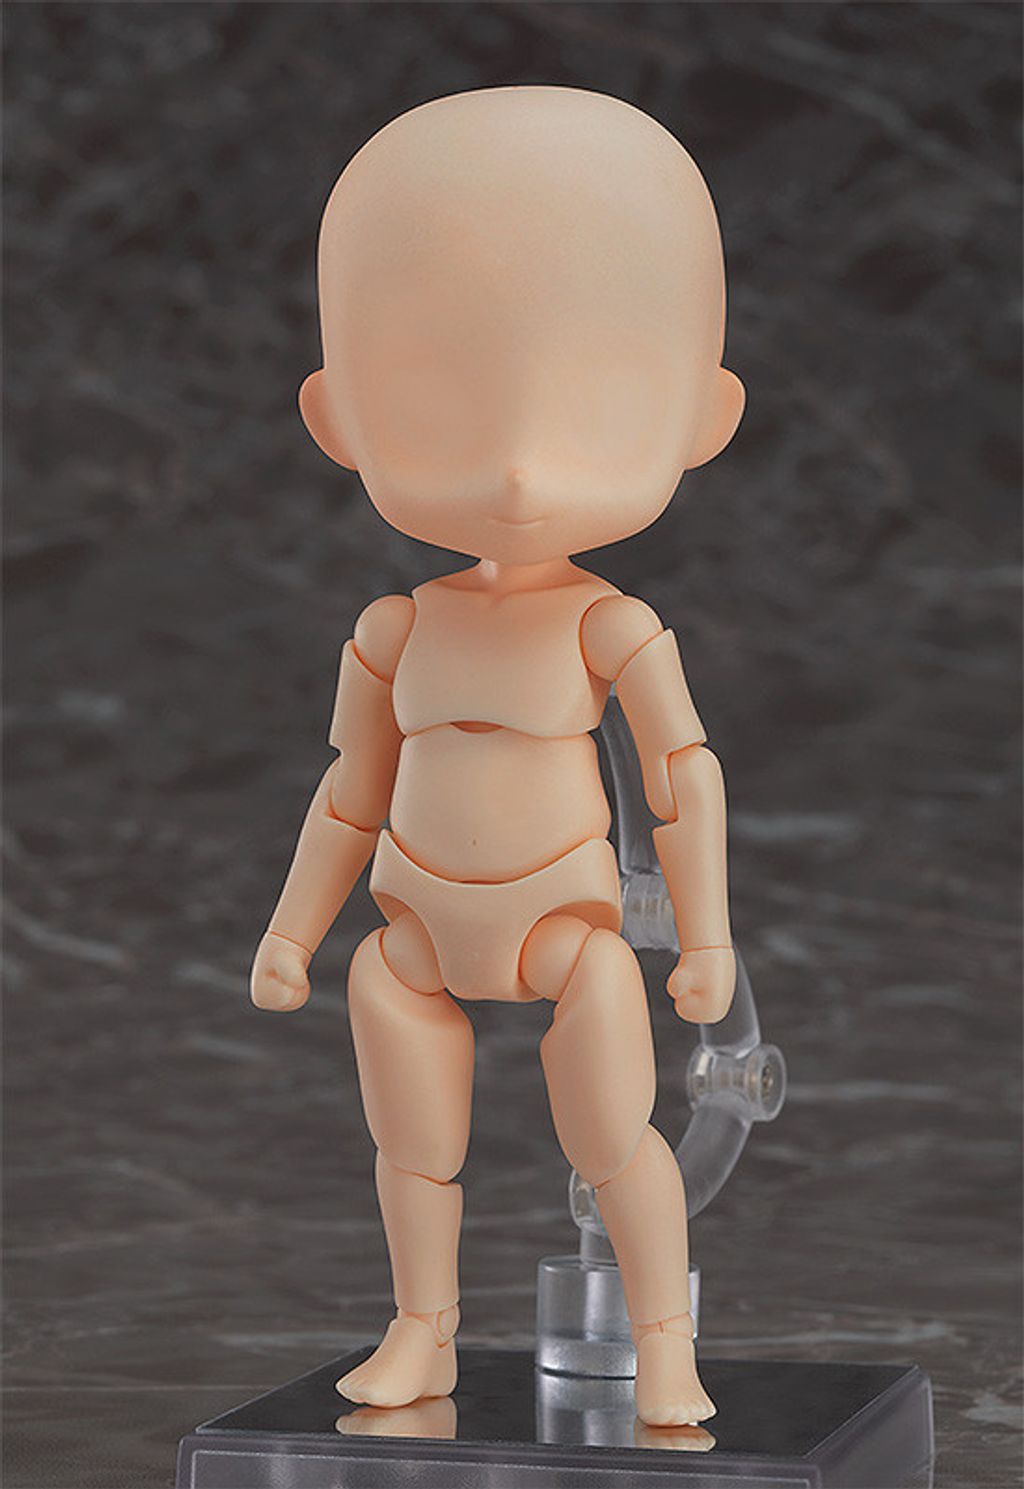 Nendoroid Doll archetype - Boy.jpg